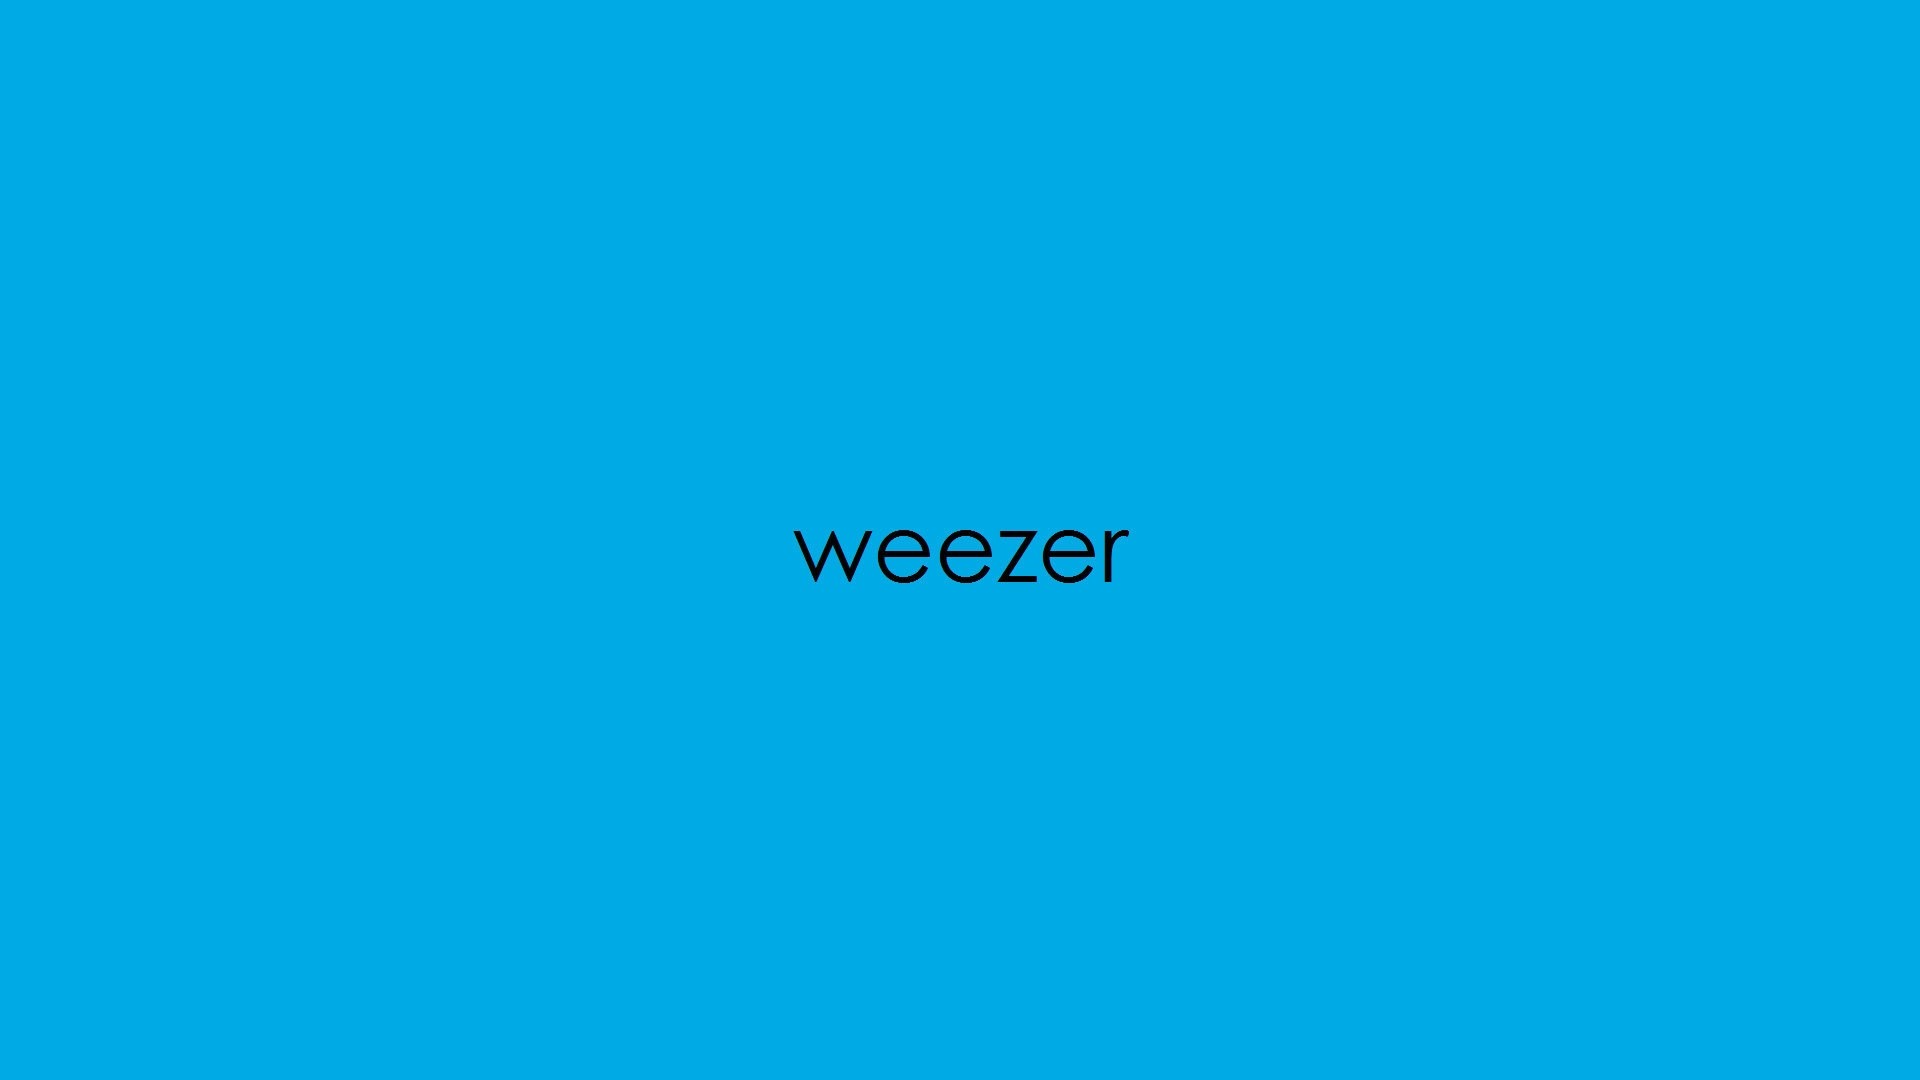 Weezer Wallpaper Image